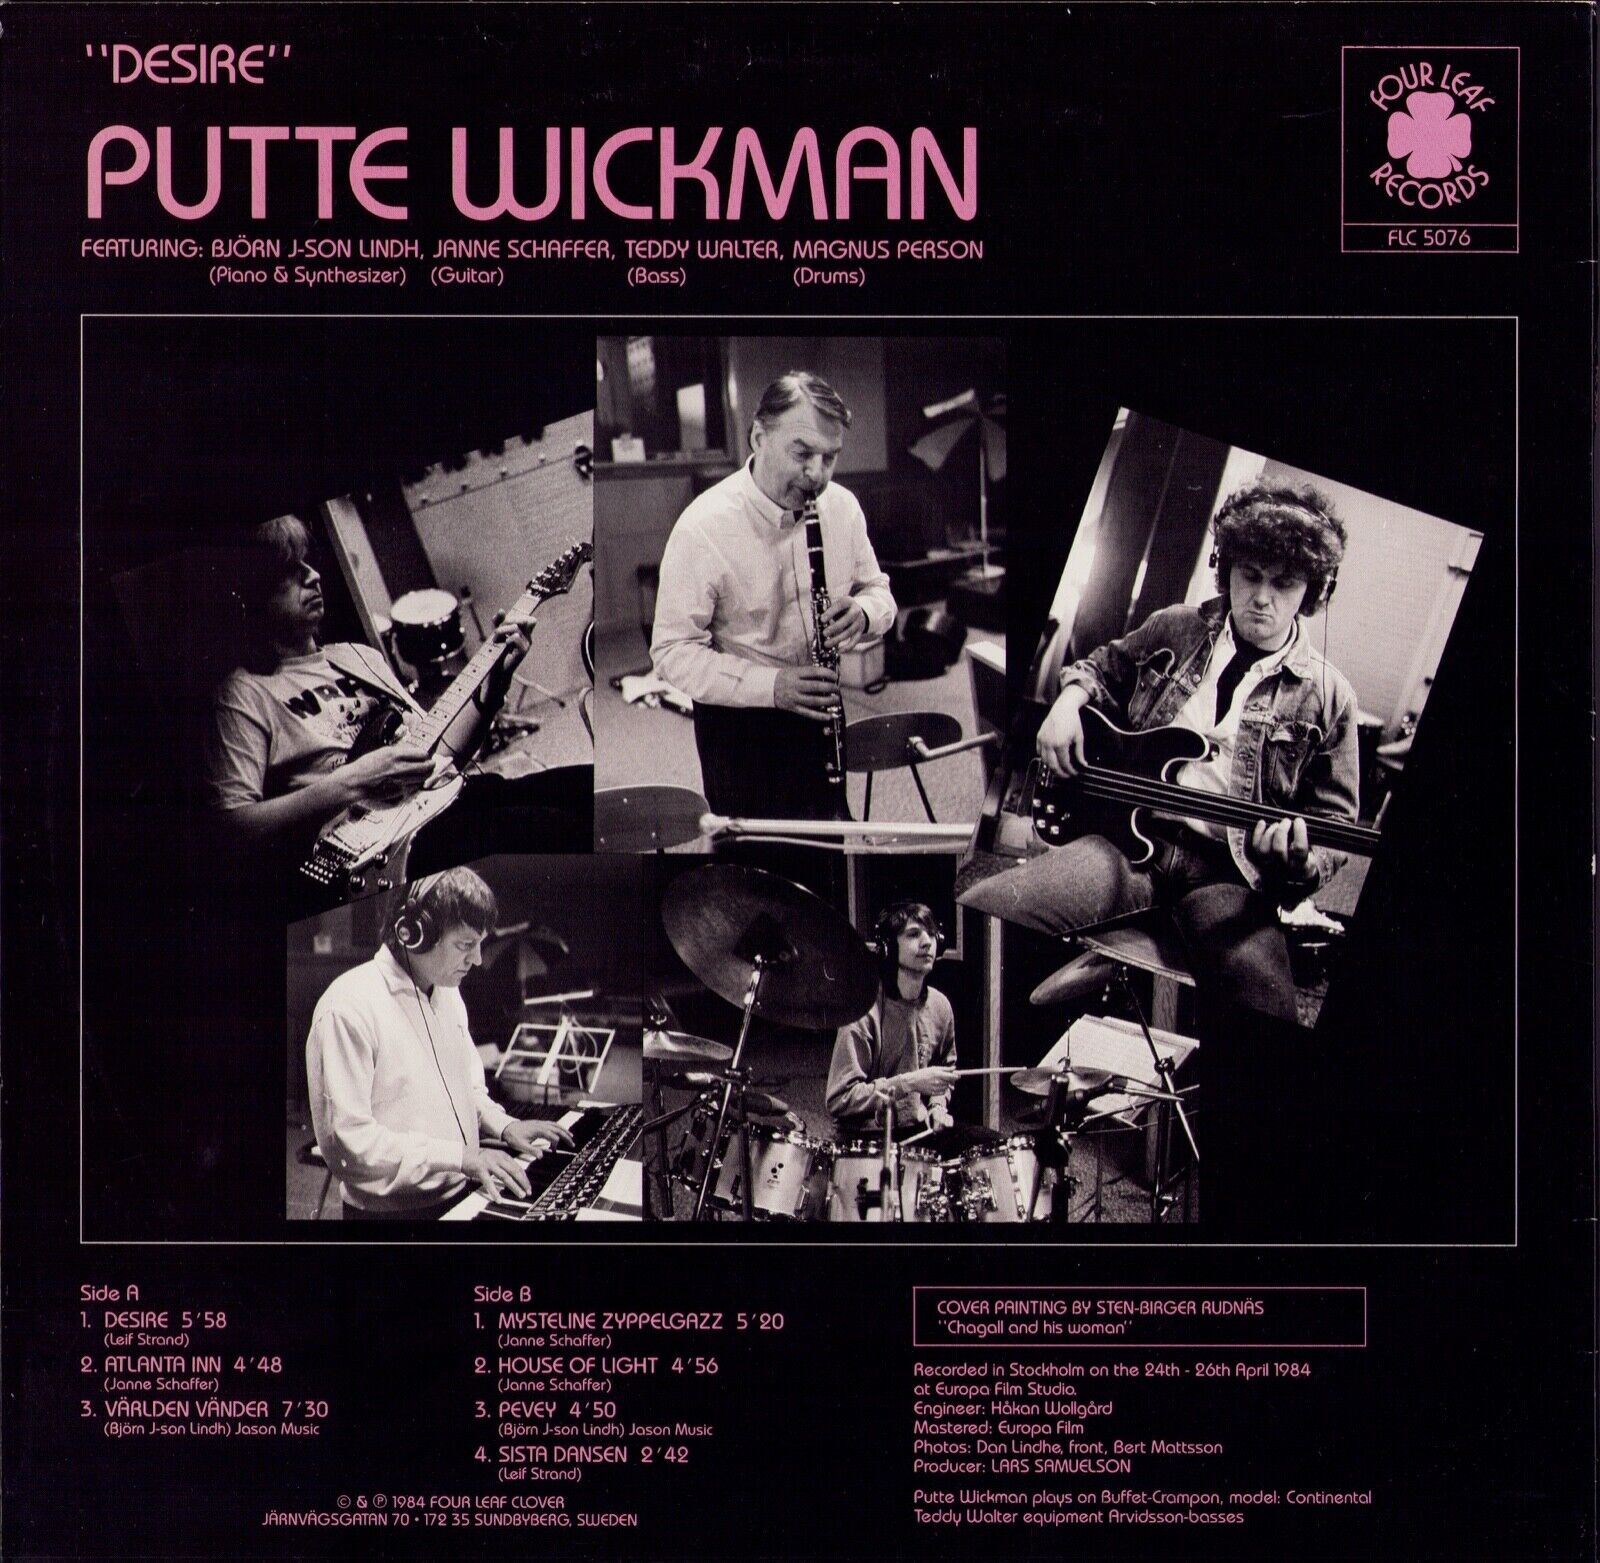 Putte Wickman ‎- Desire Vinyl LP SW